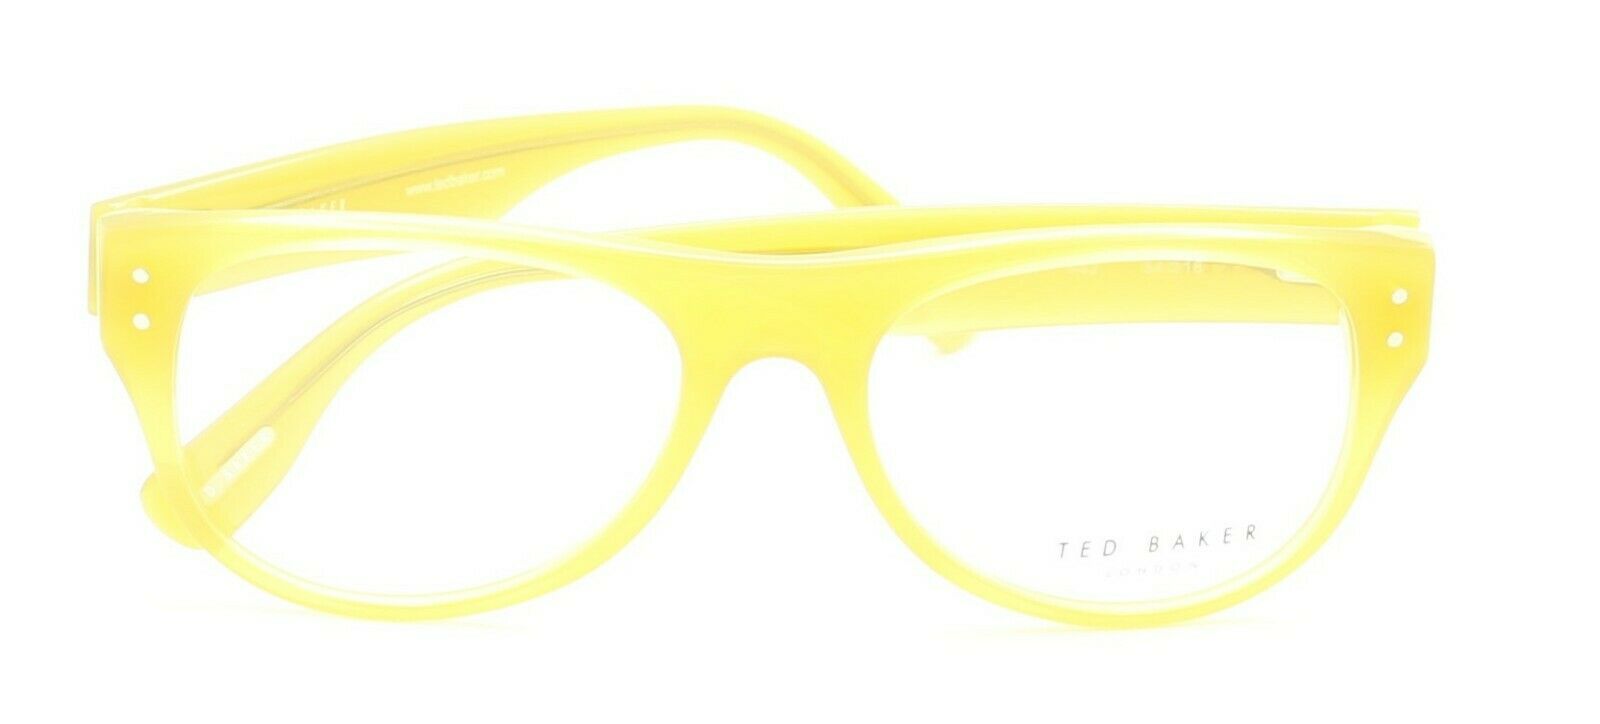 TED BAKER Colebrook 8071 442 54mm FRAMES Glasses Eyeglasses RX Optical - New